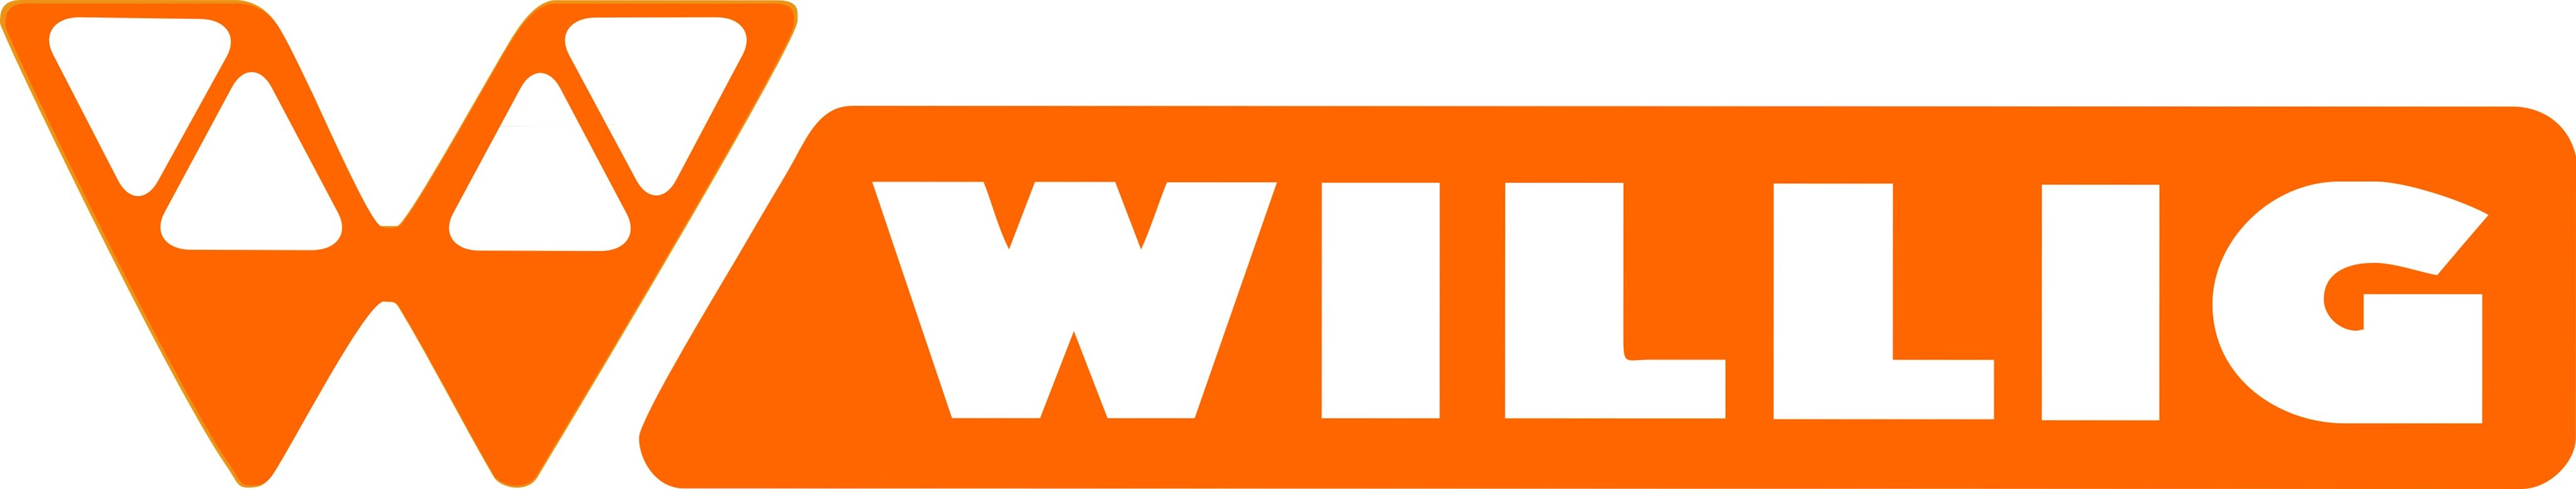 Logo der Firma WILLIG. Links ein grosses W, im unteren Drittel komplett in Orange, darüber nur orange Aussenlinien. Rechts daneben in weissen Buchstaben auf orangem Grund das Wort WILLIG